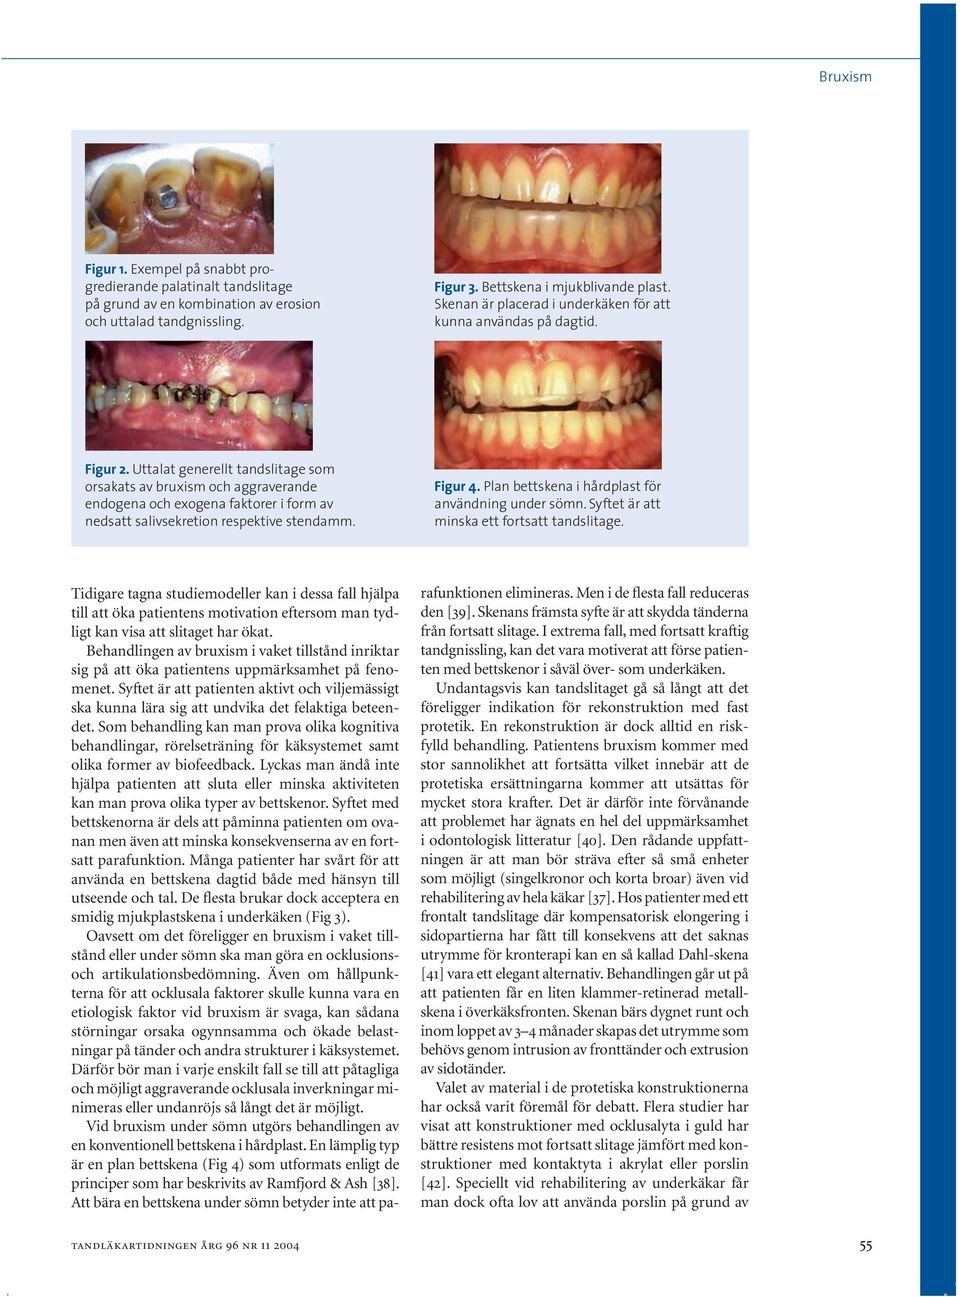 Uttalat generellt tandslitage som orsakats av bruxism och aggraverande endogena och exogena faktorer i form av nedsatt salivsekretion respektive stendamm. Figur 4.